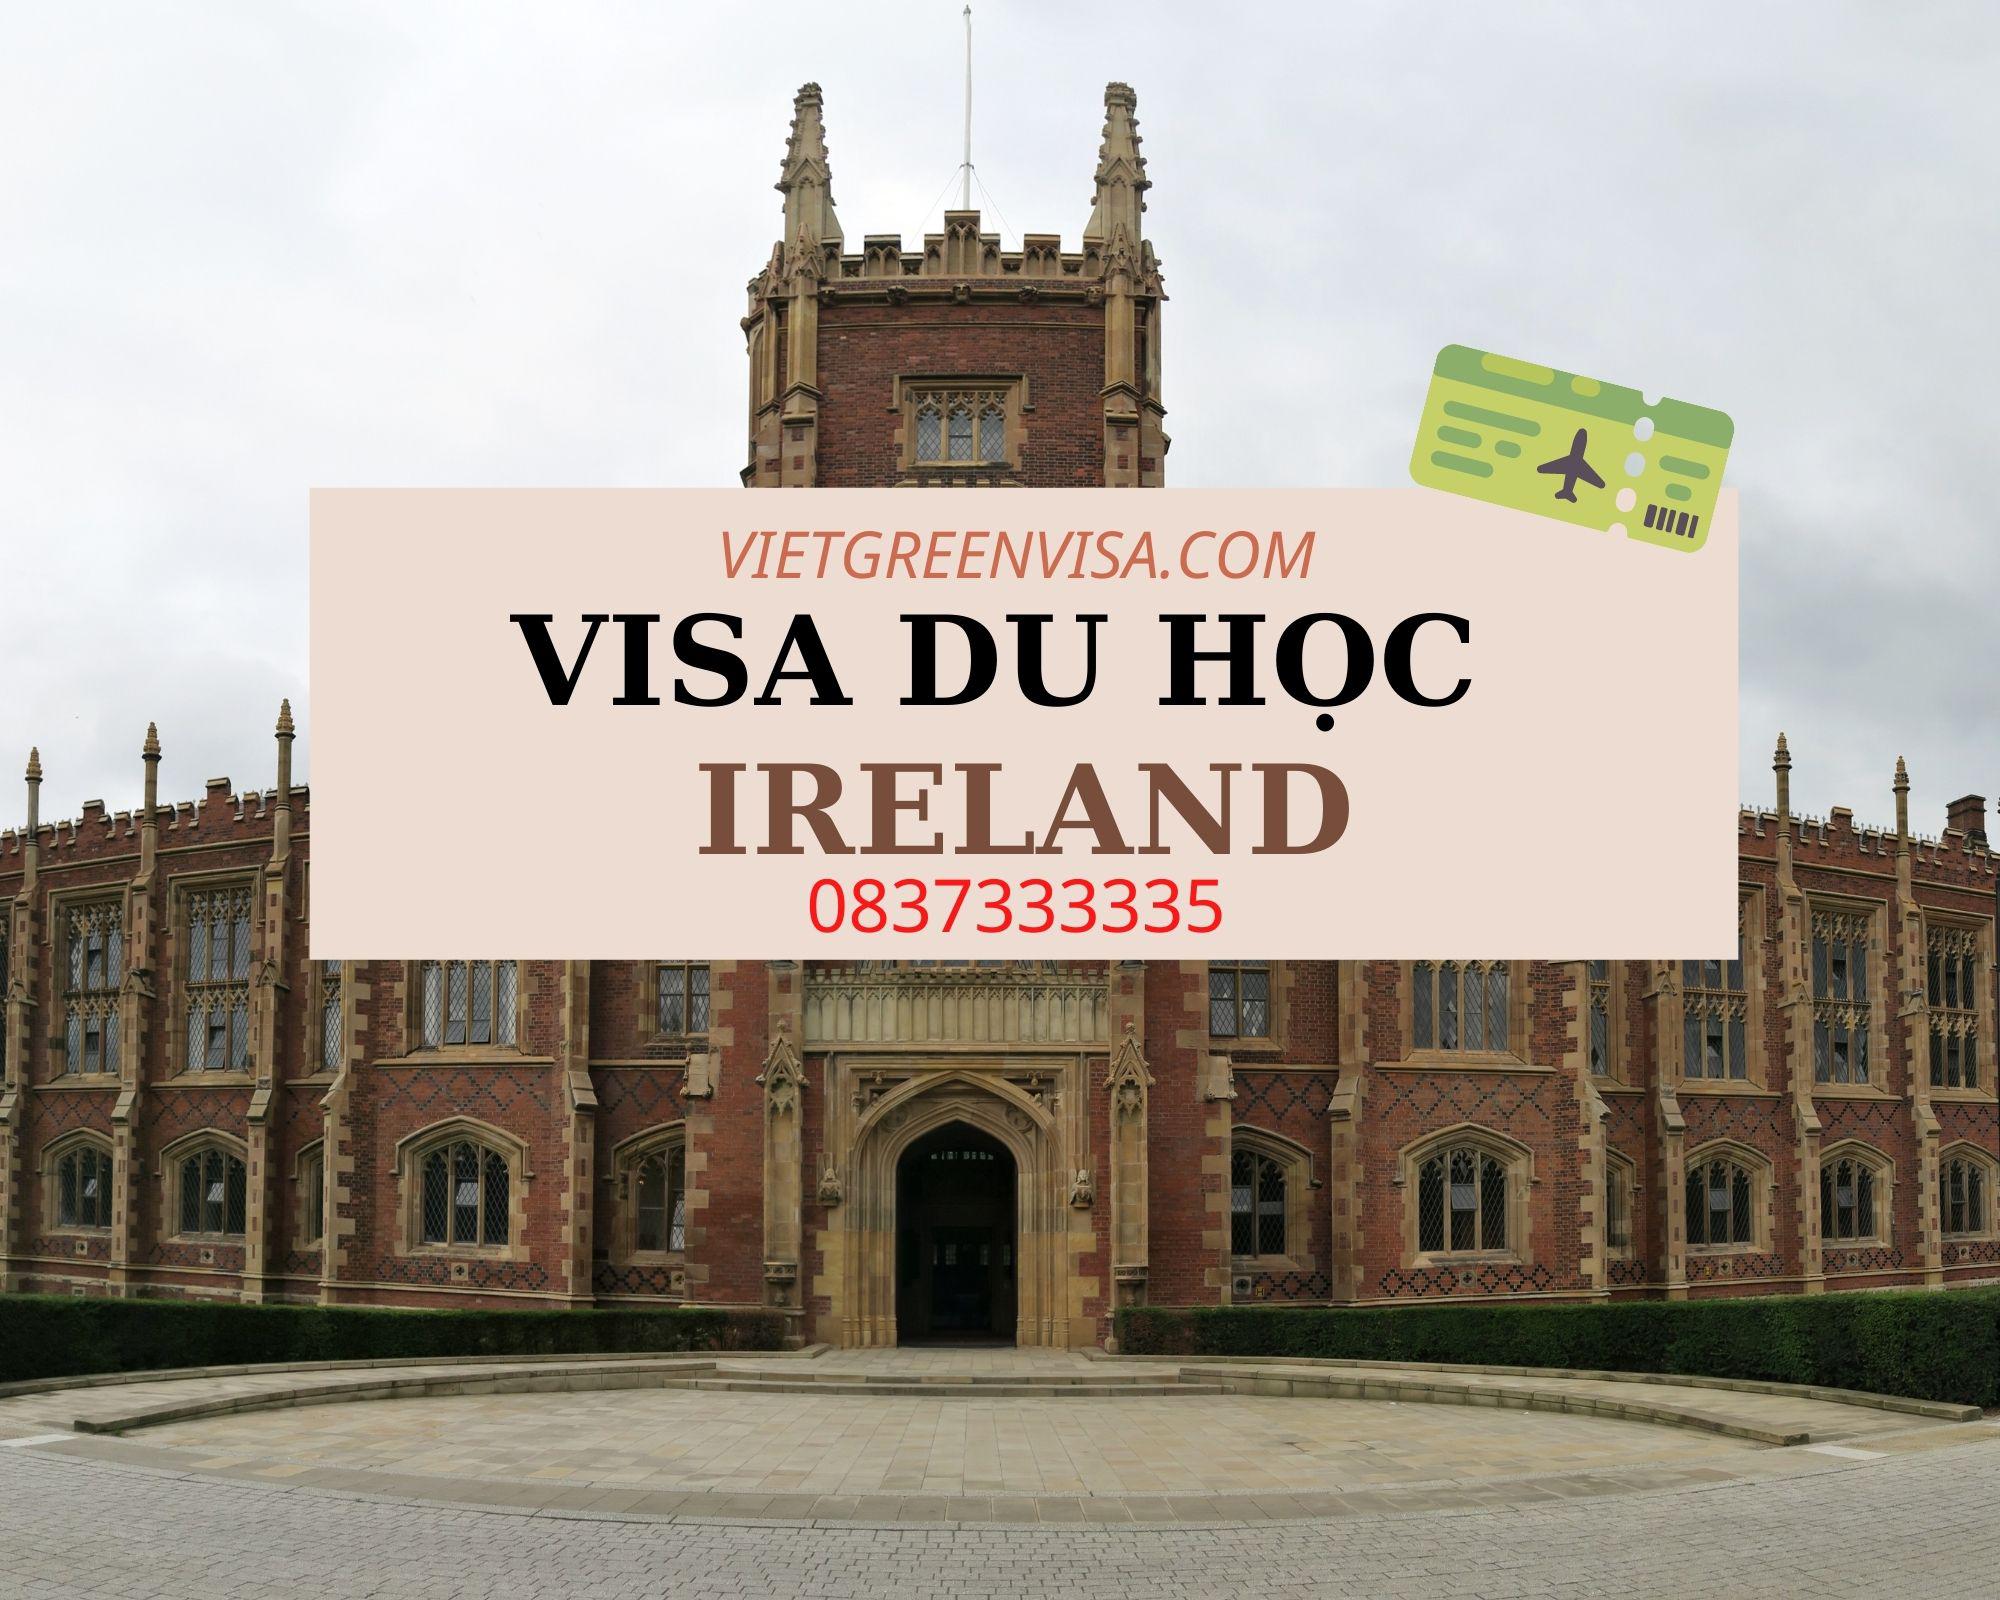 Dịch vụ xin visa du học ở Ireland nhanh rẻ nhất